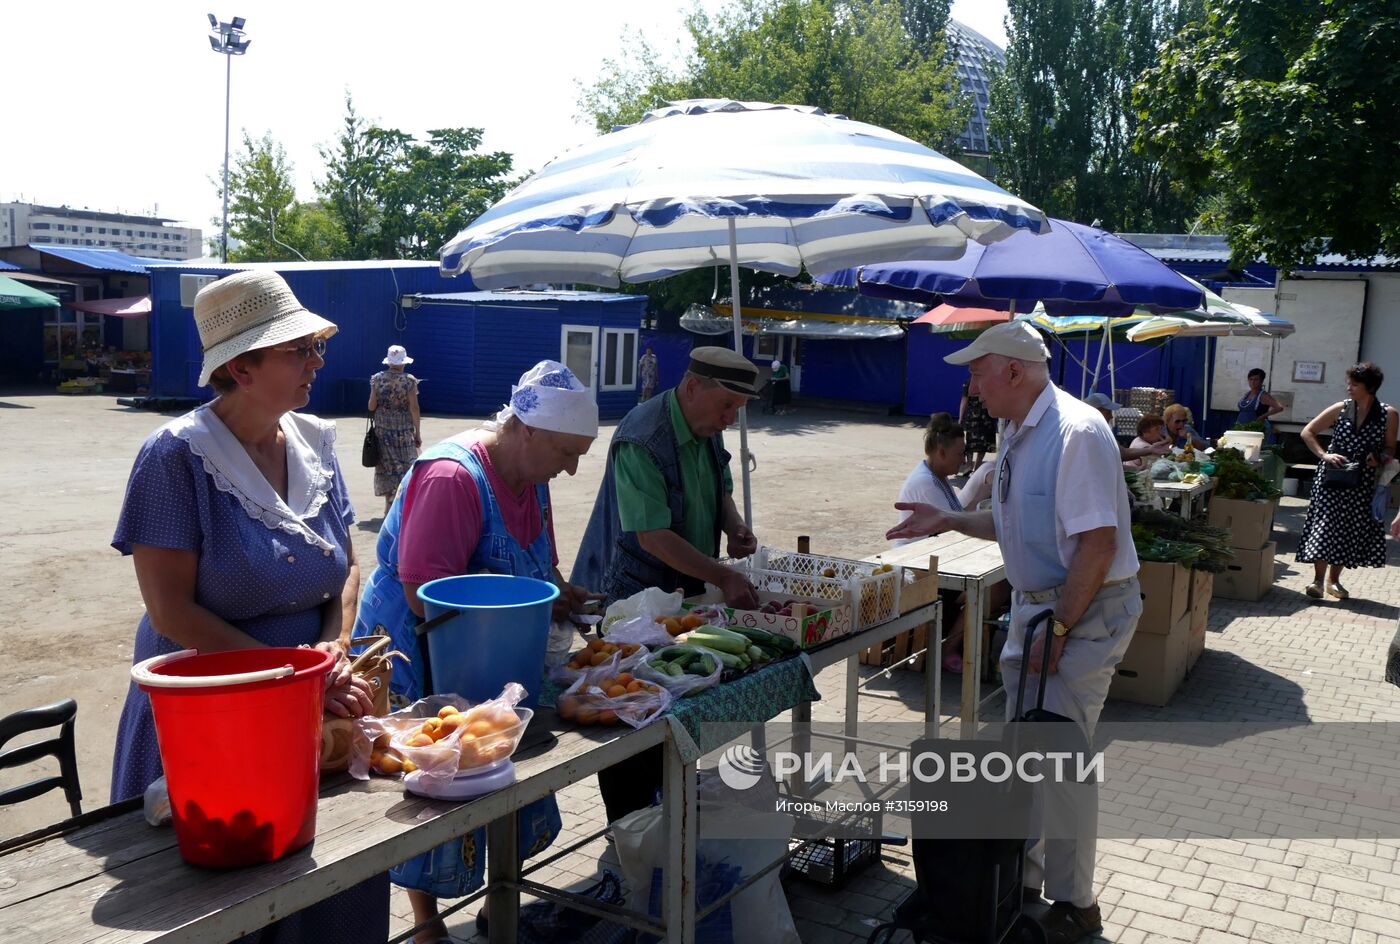 Продажа овощей и фруктов на рынке в Донецке